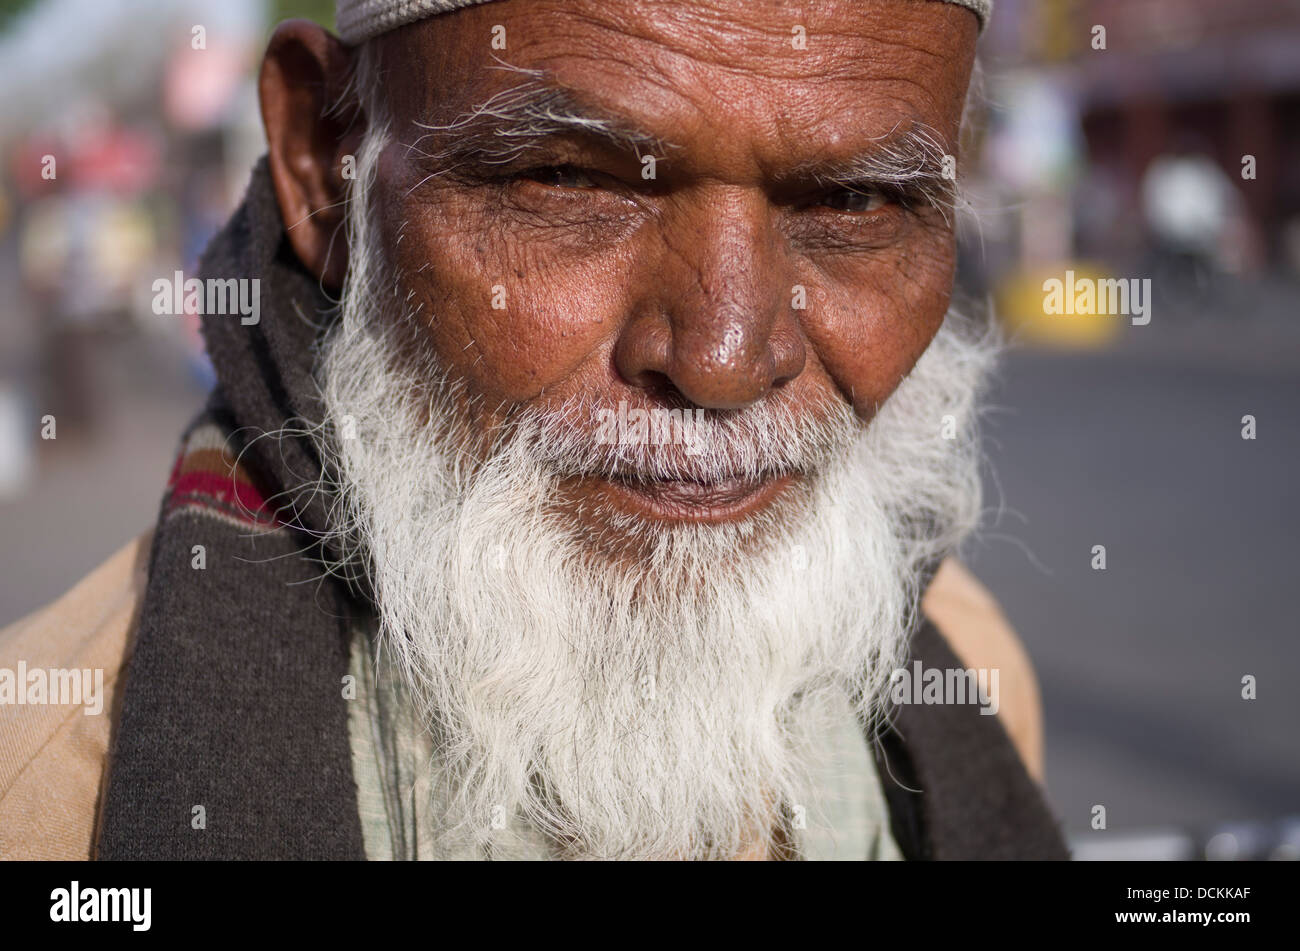 Uomo con barba bianca immagini e fotografie stock ad alta risoluzione -  Alamy